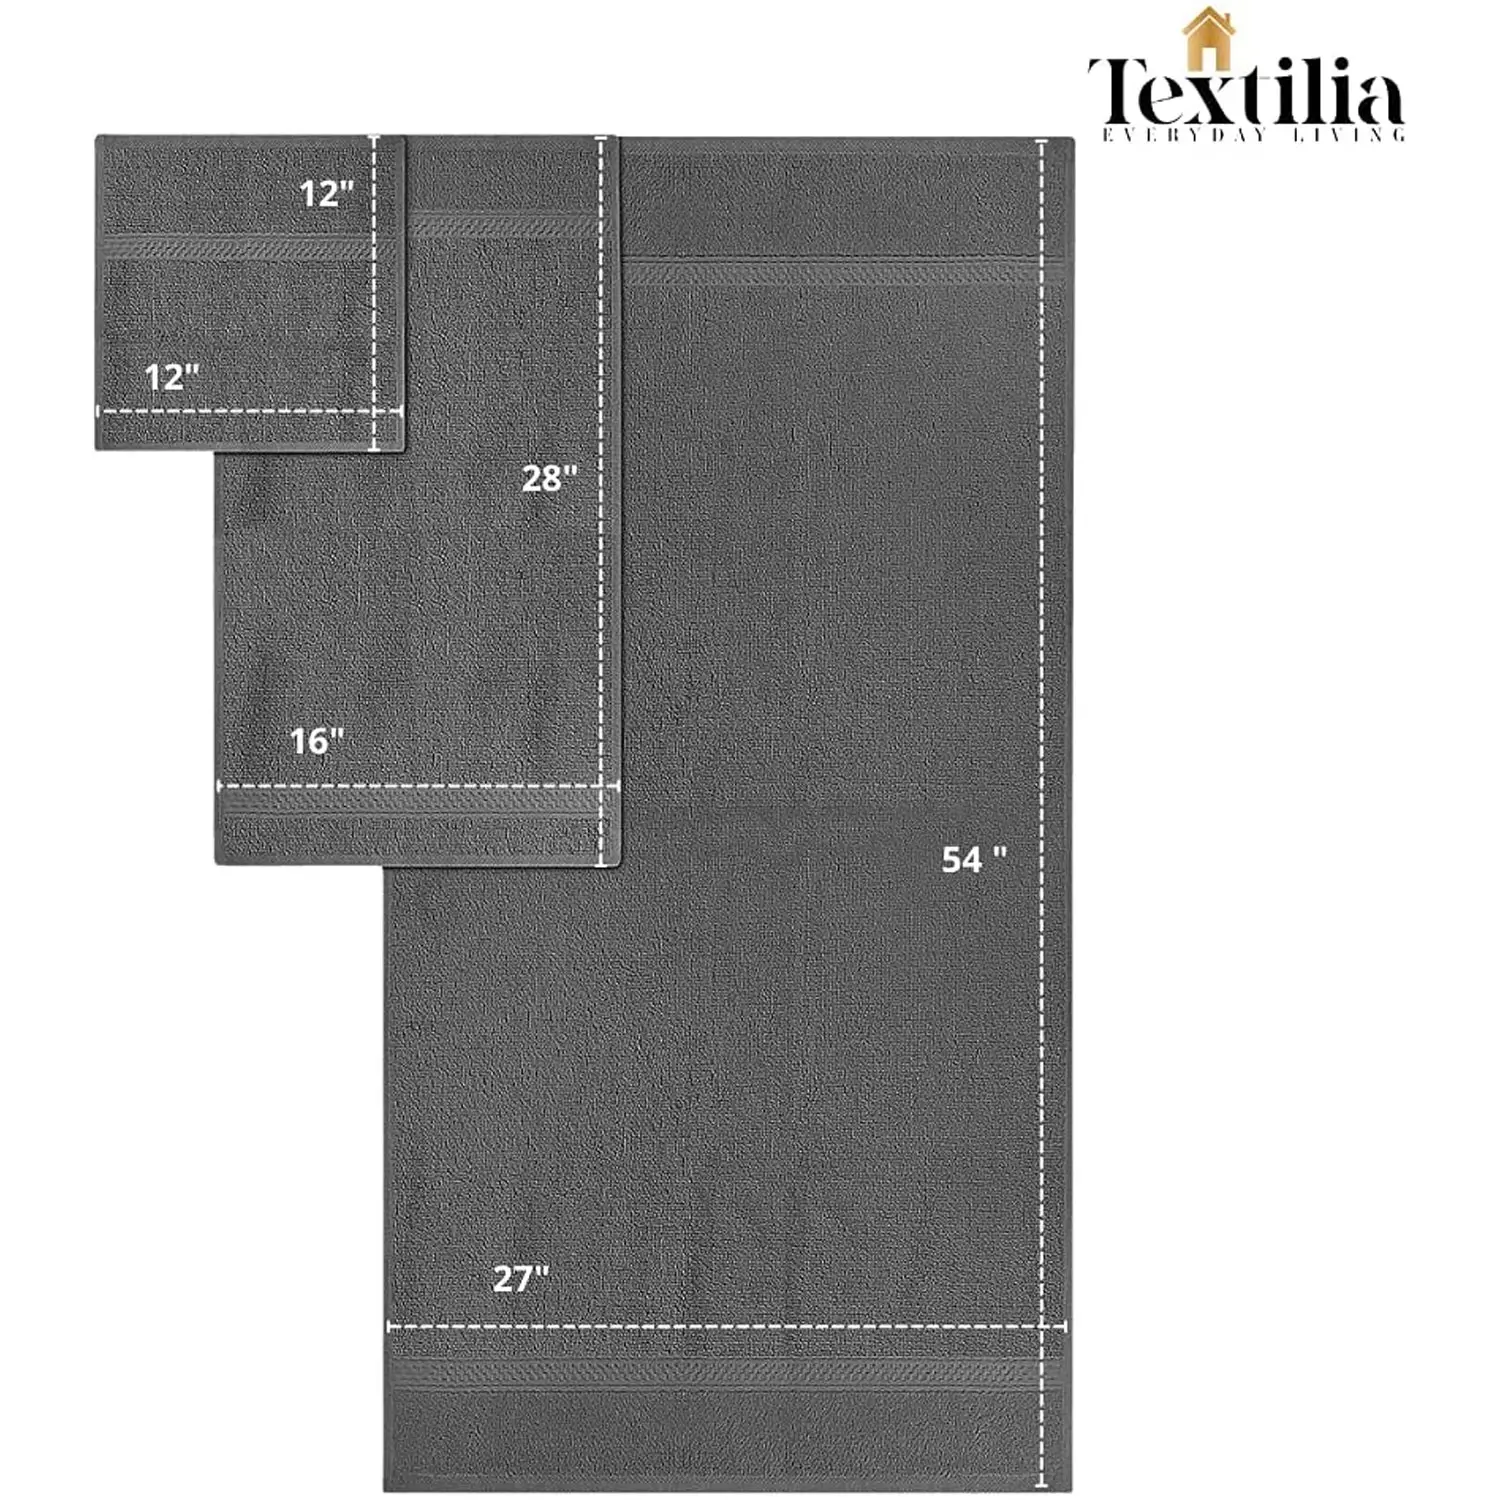 Textilia Set of 8 - 3 Size 100% Cotton Towels 600gsm